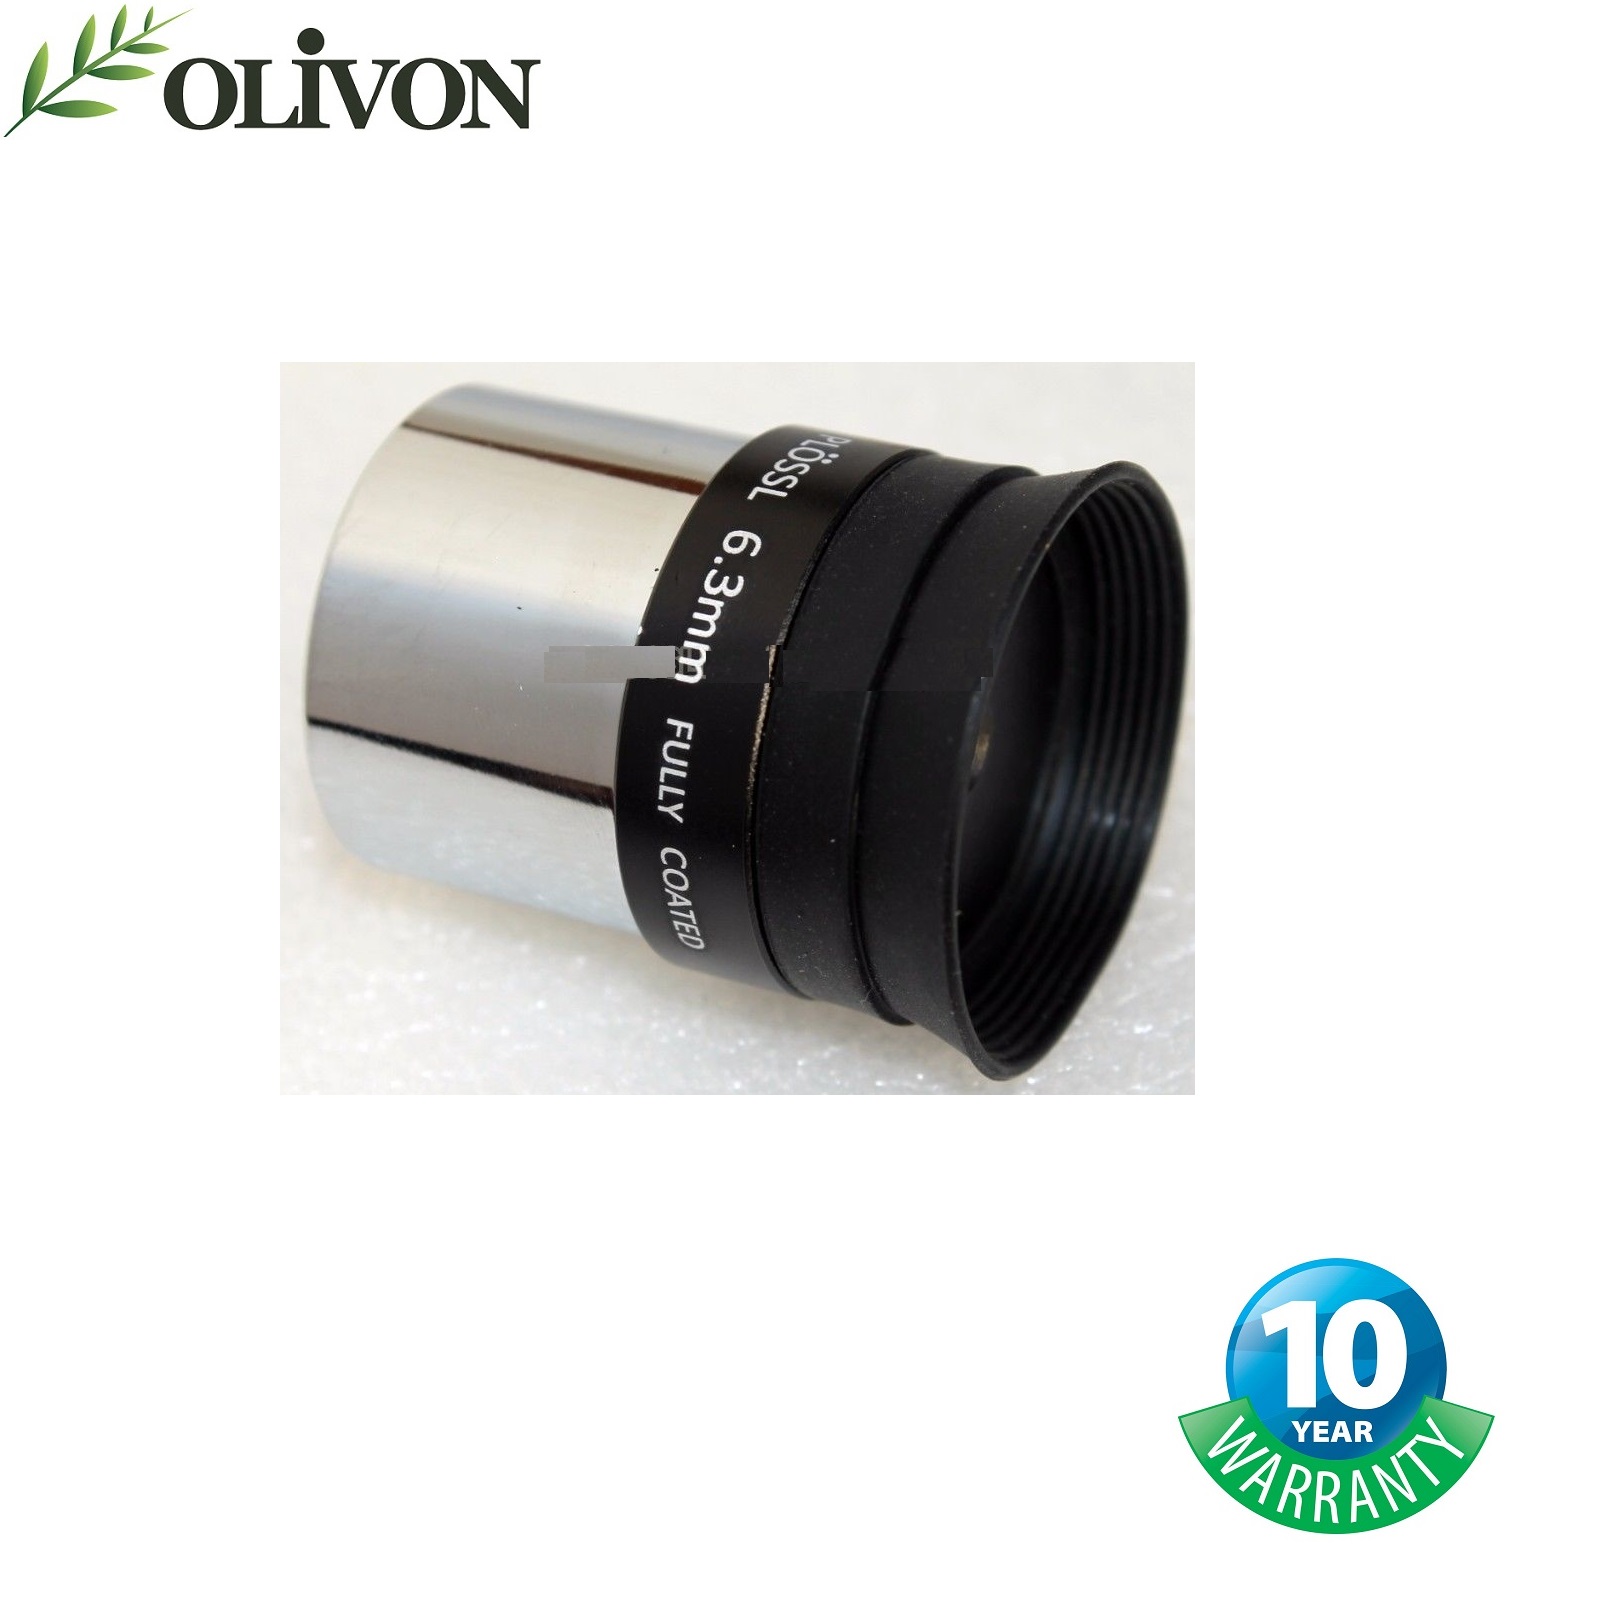 Olivon Plossl 1.25 inch Eyepiece 6.3mm